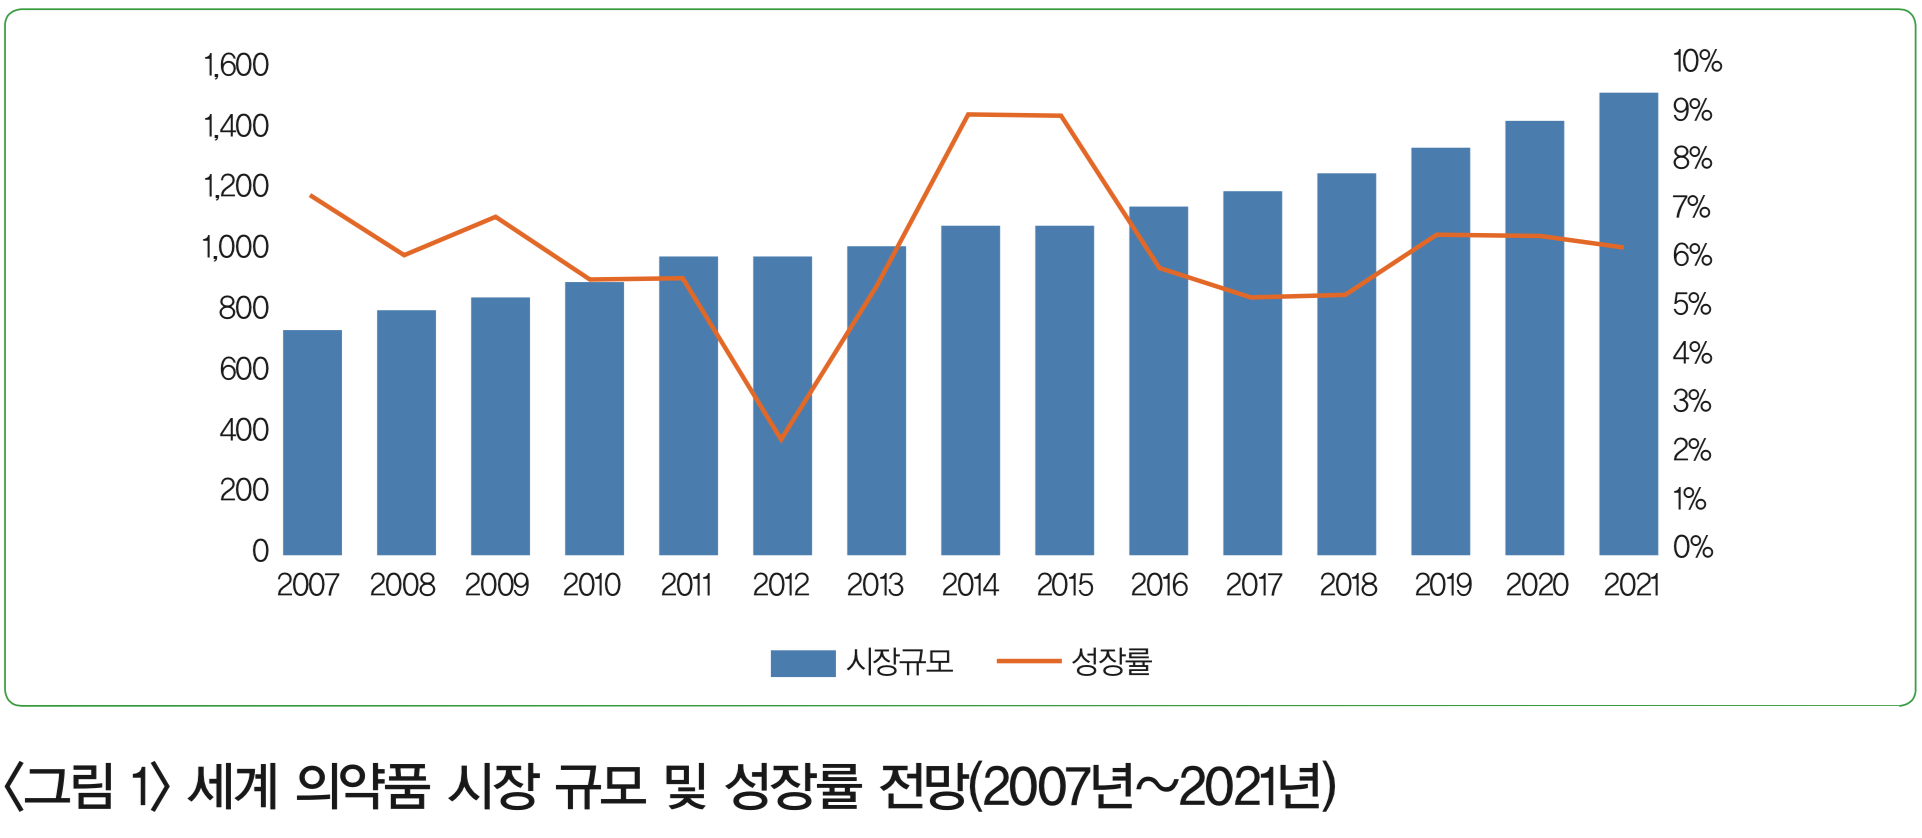 <그림 1> 세계 의약품 시장 규모 및 성장률 전망(2007년~2021년)